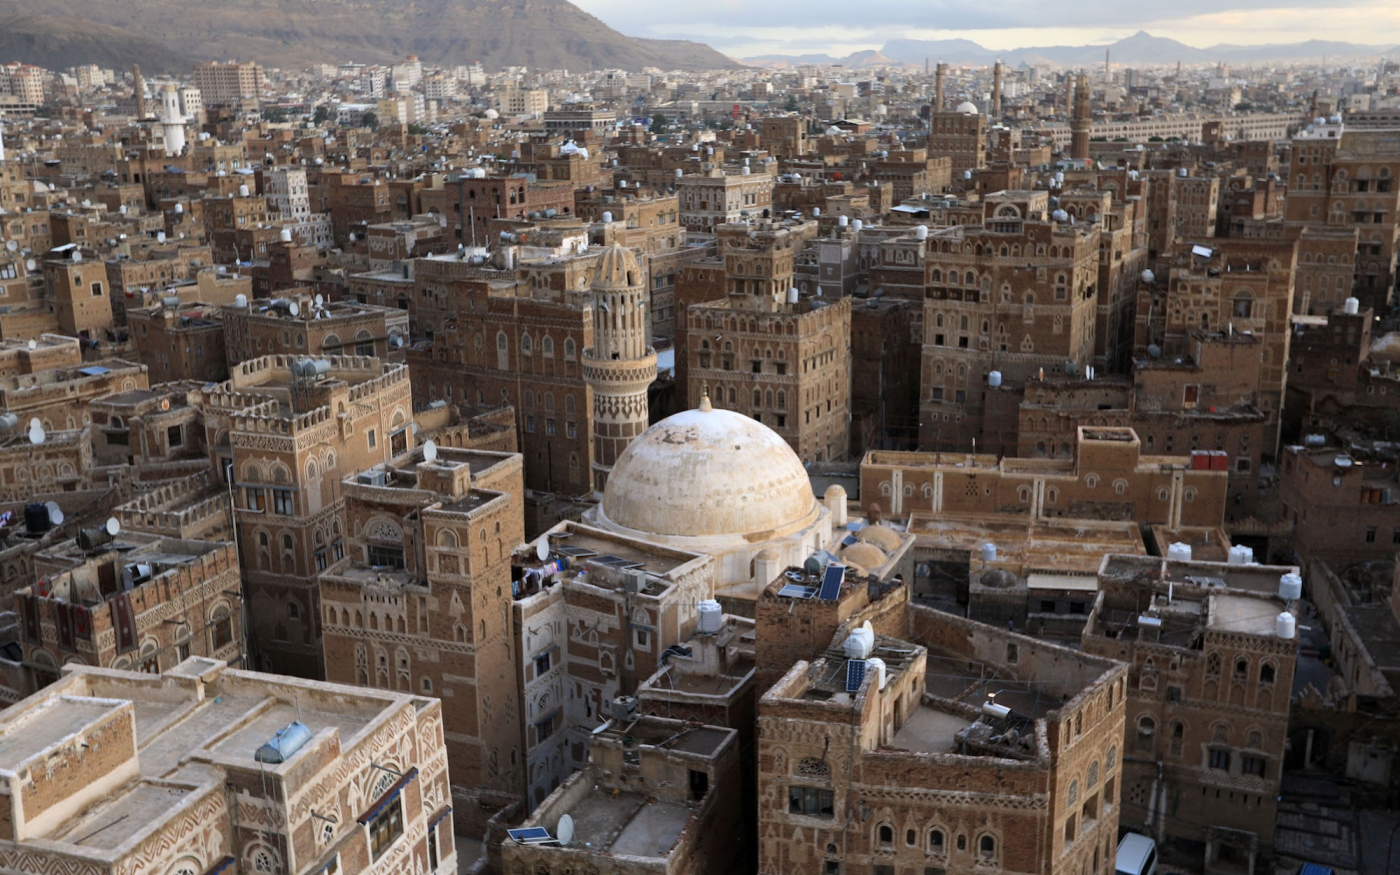 Vue de la vieille ville de Sanaa, site inscrit au patrimoine mondial de l’UNESCO, avec ses maisons typiques en pisé (photo d’archives/AFP)